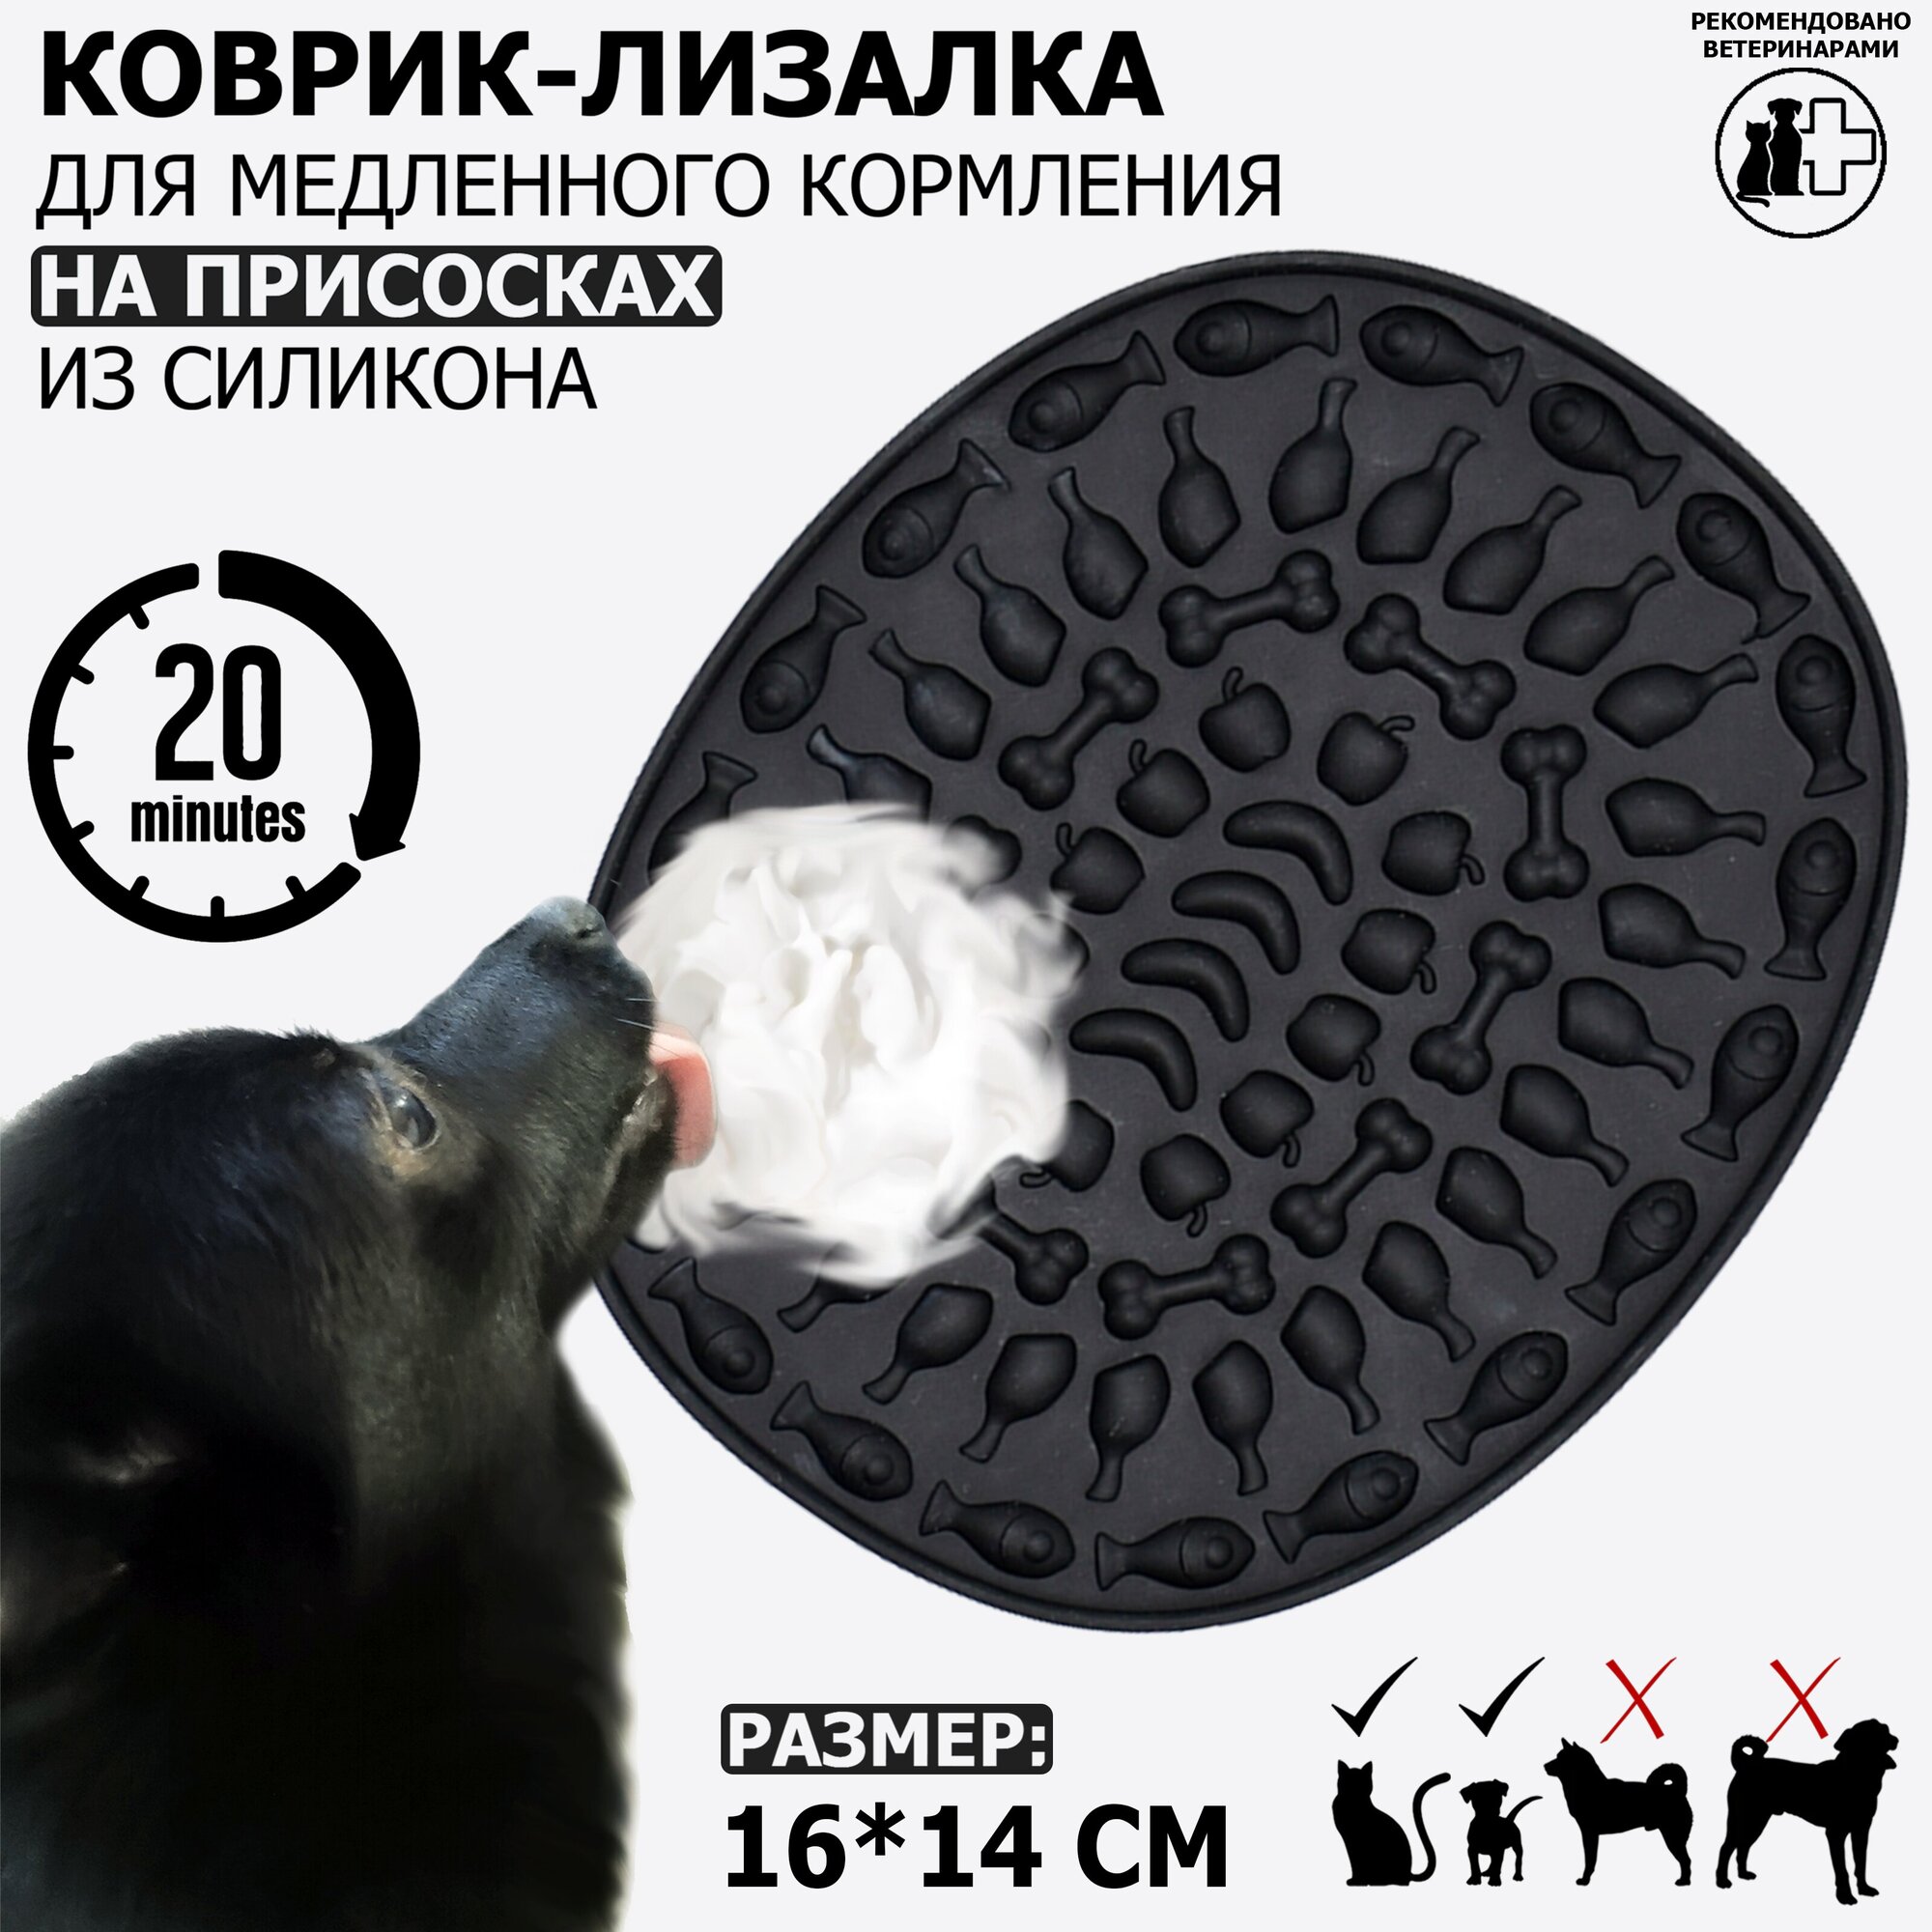 Коврик-лизалка / коврик для лизания / миска для медленного кормления на присосках Meovajio, черный, 16*14*1,6см, для кошек и собак мелких пород